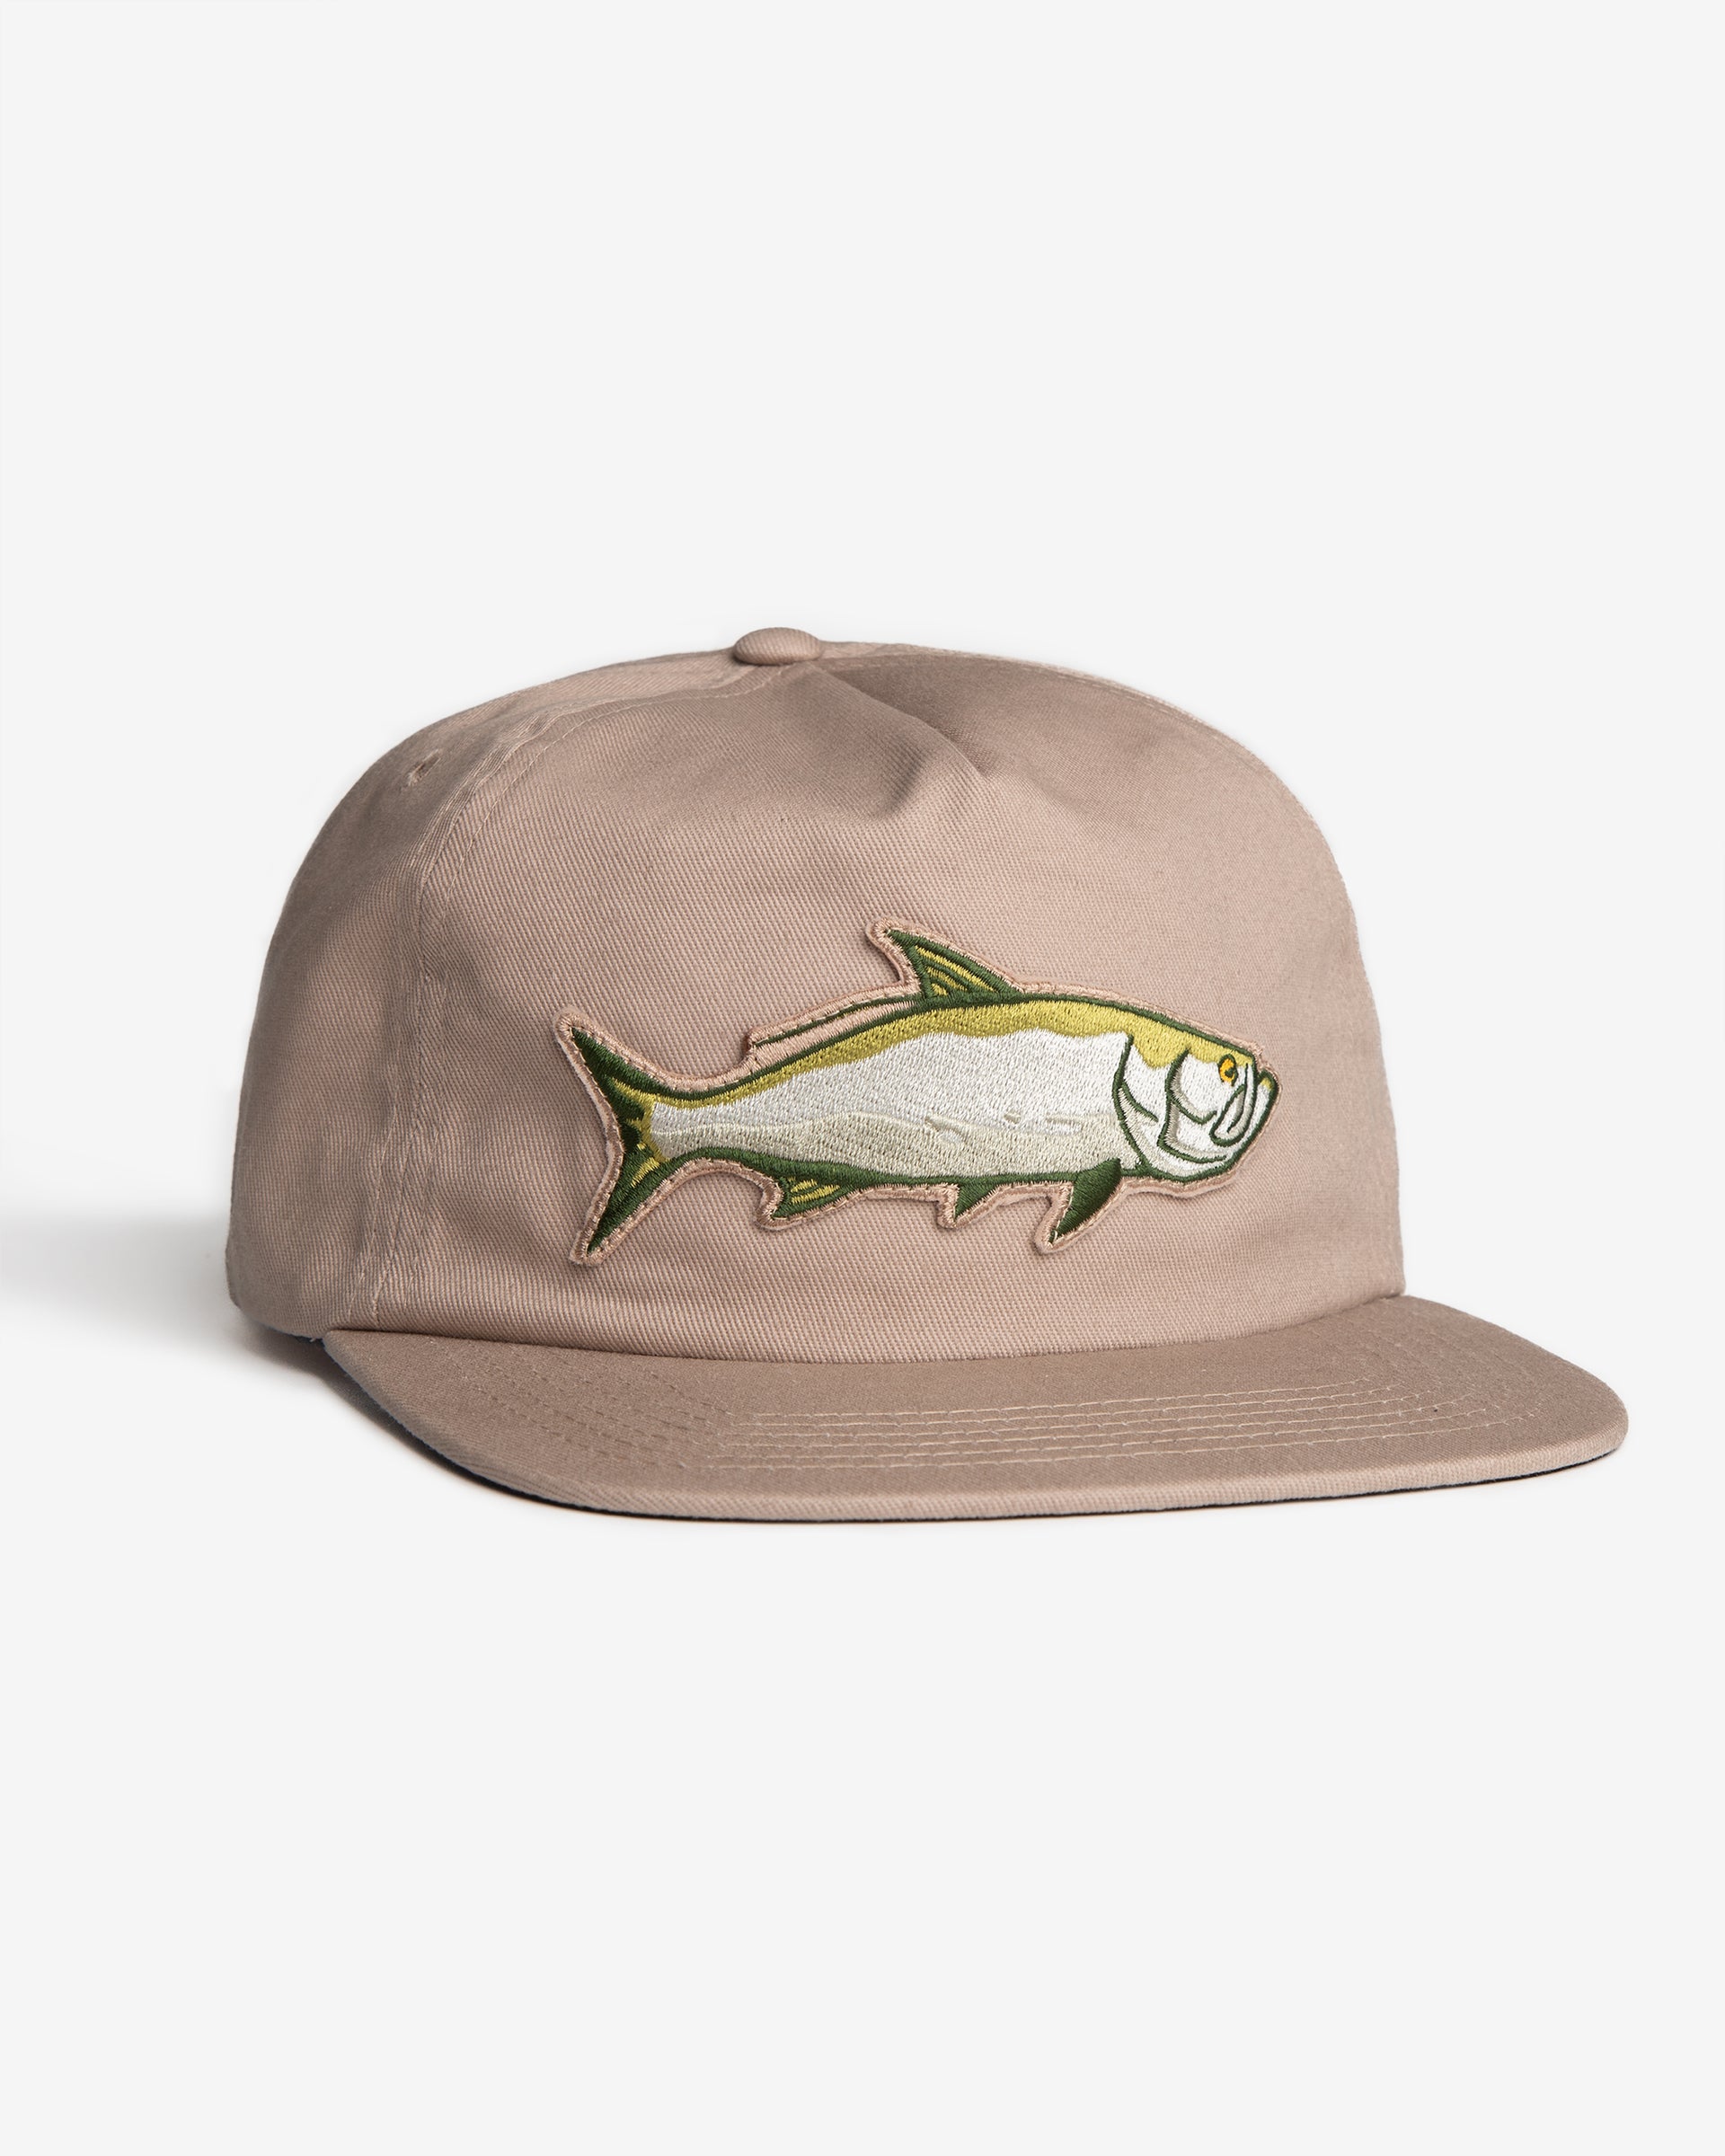 Tarpon Snapback, Tarpon Fishing Hat